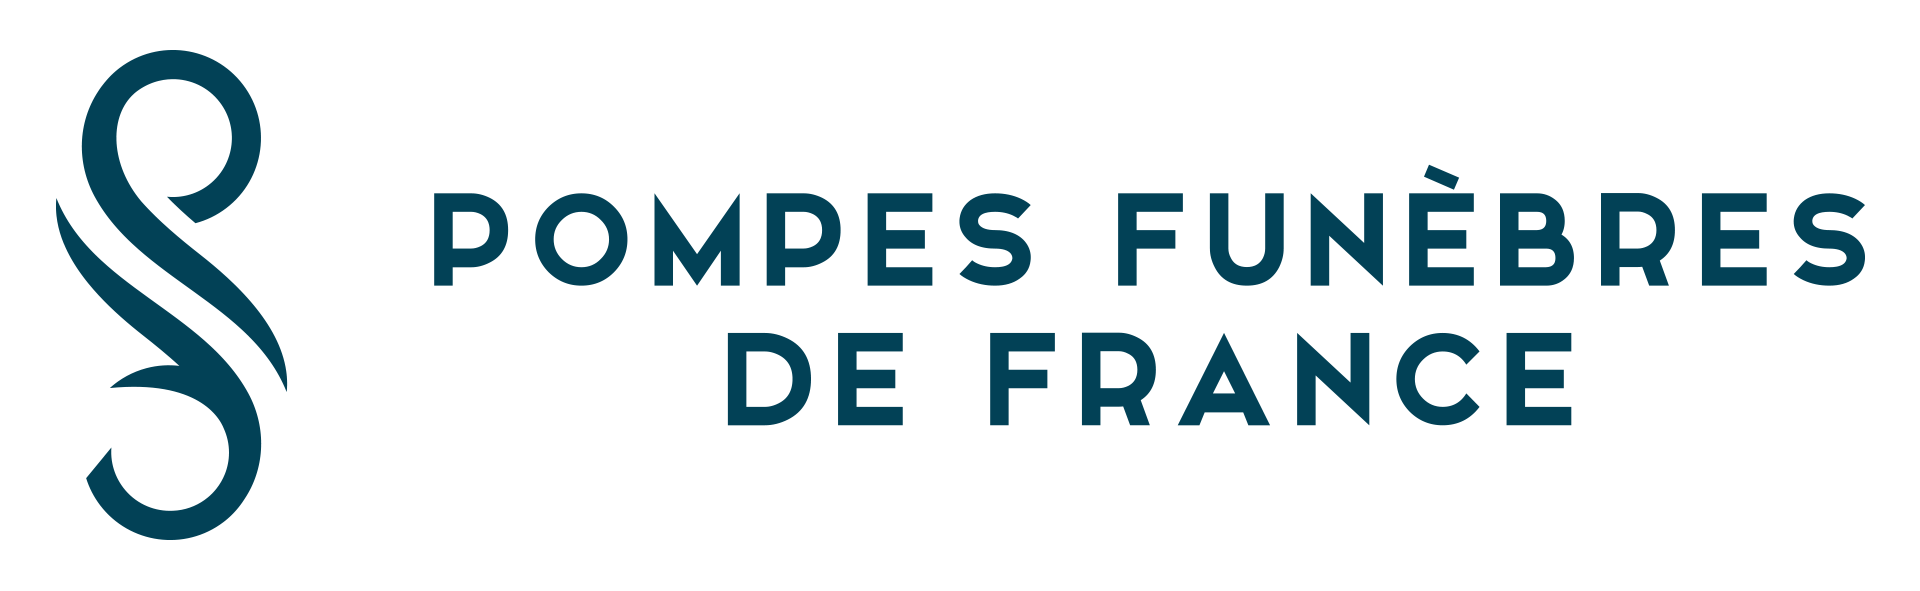 POMPES FUNÈBRES DE FRANCE Nantes